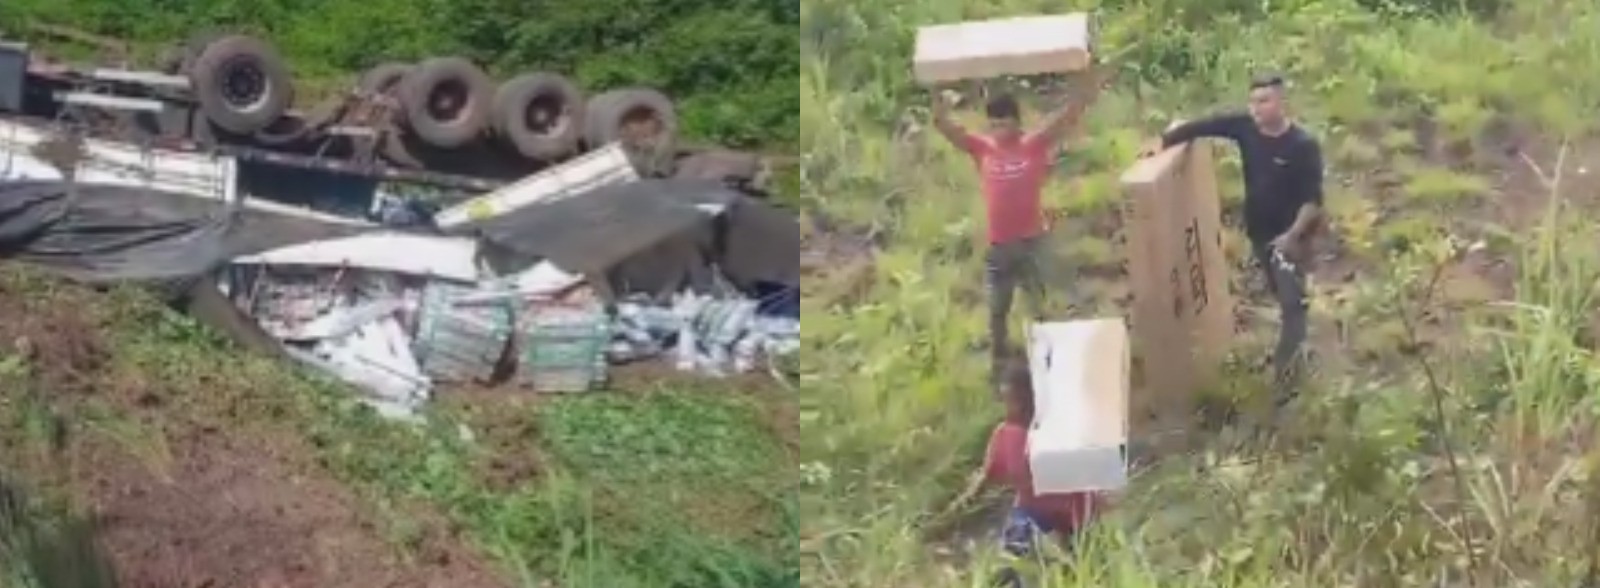 Vídeo mostra pessoas saqueando carga de caminhão tombado após acidente em rodovia no Pará